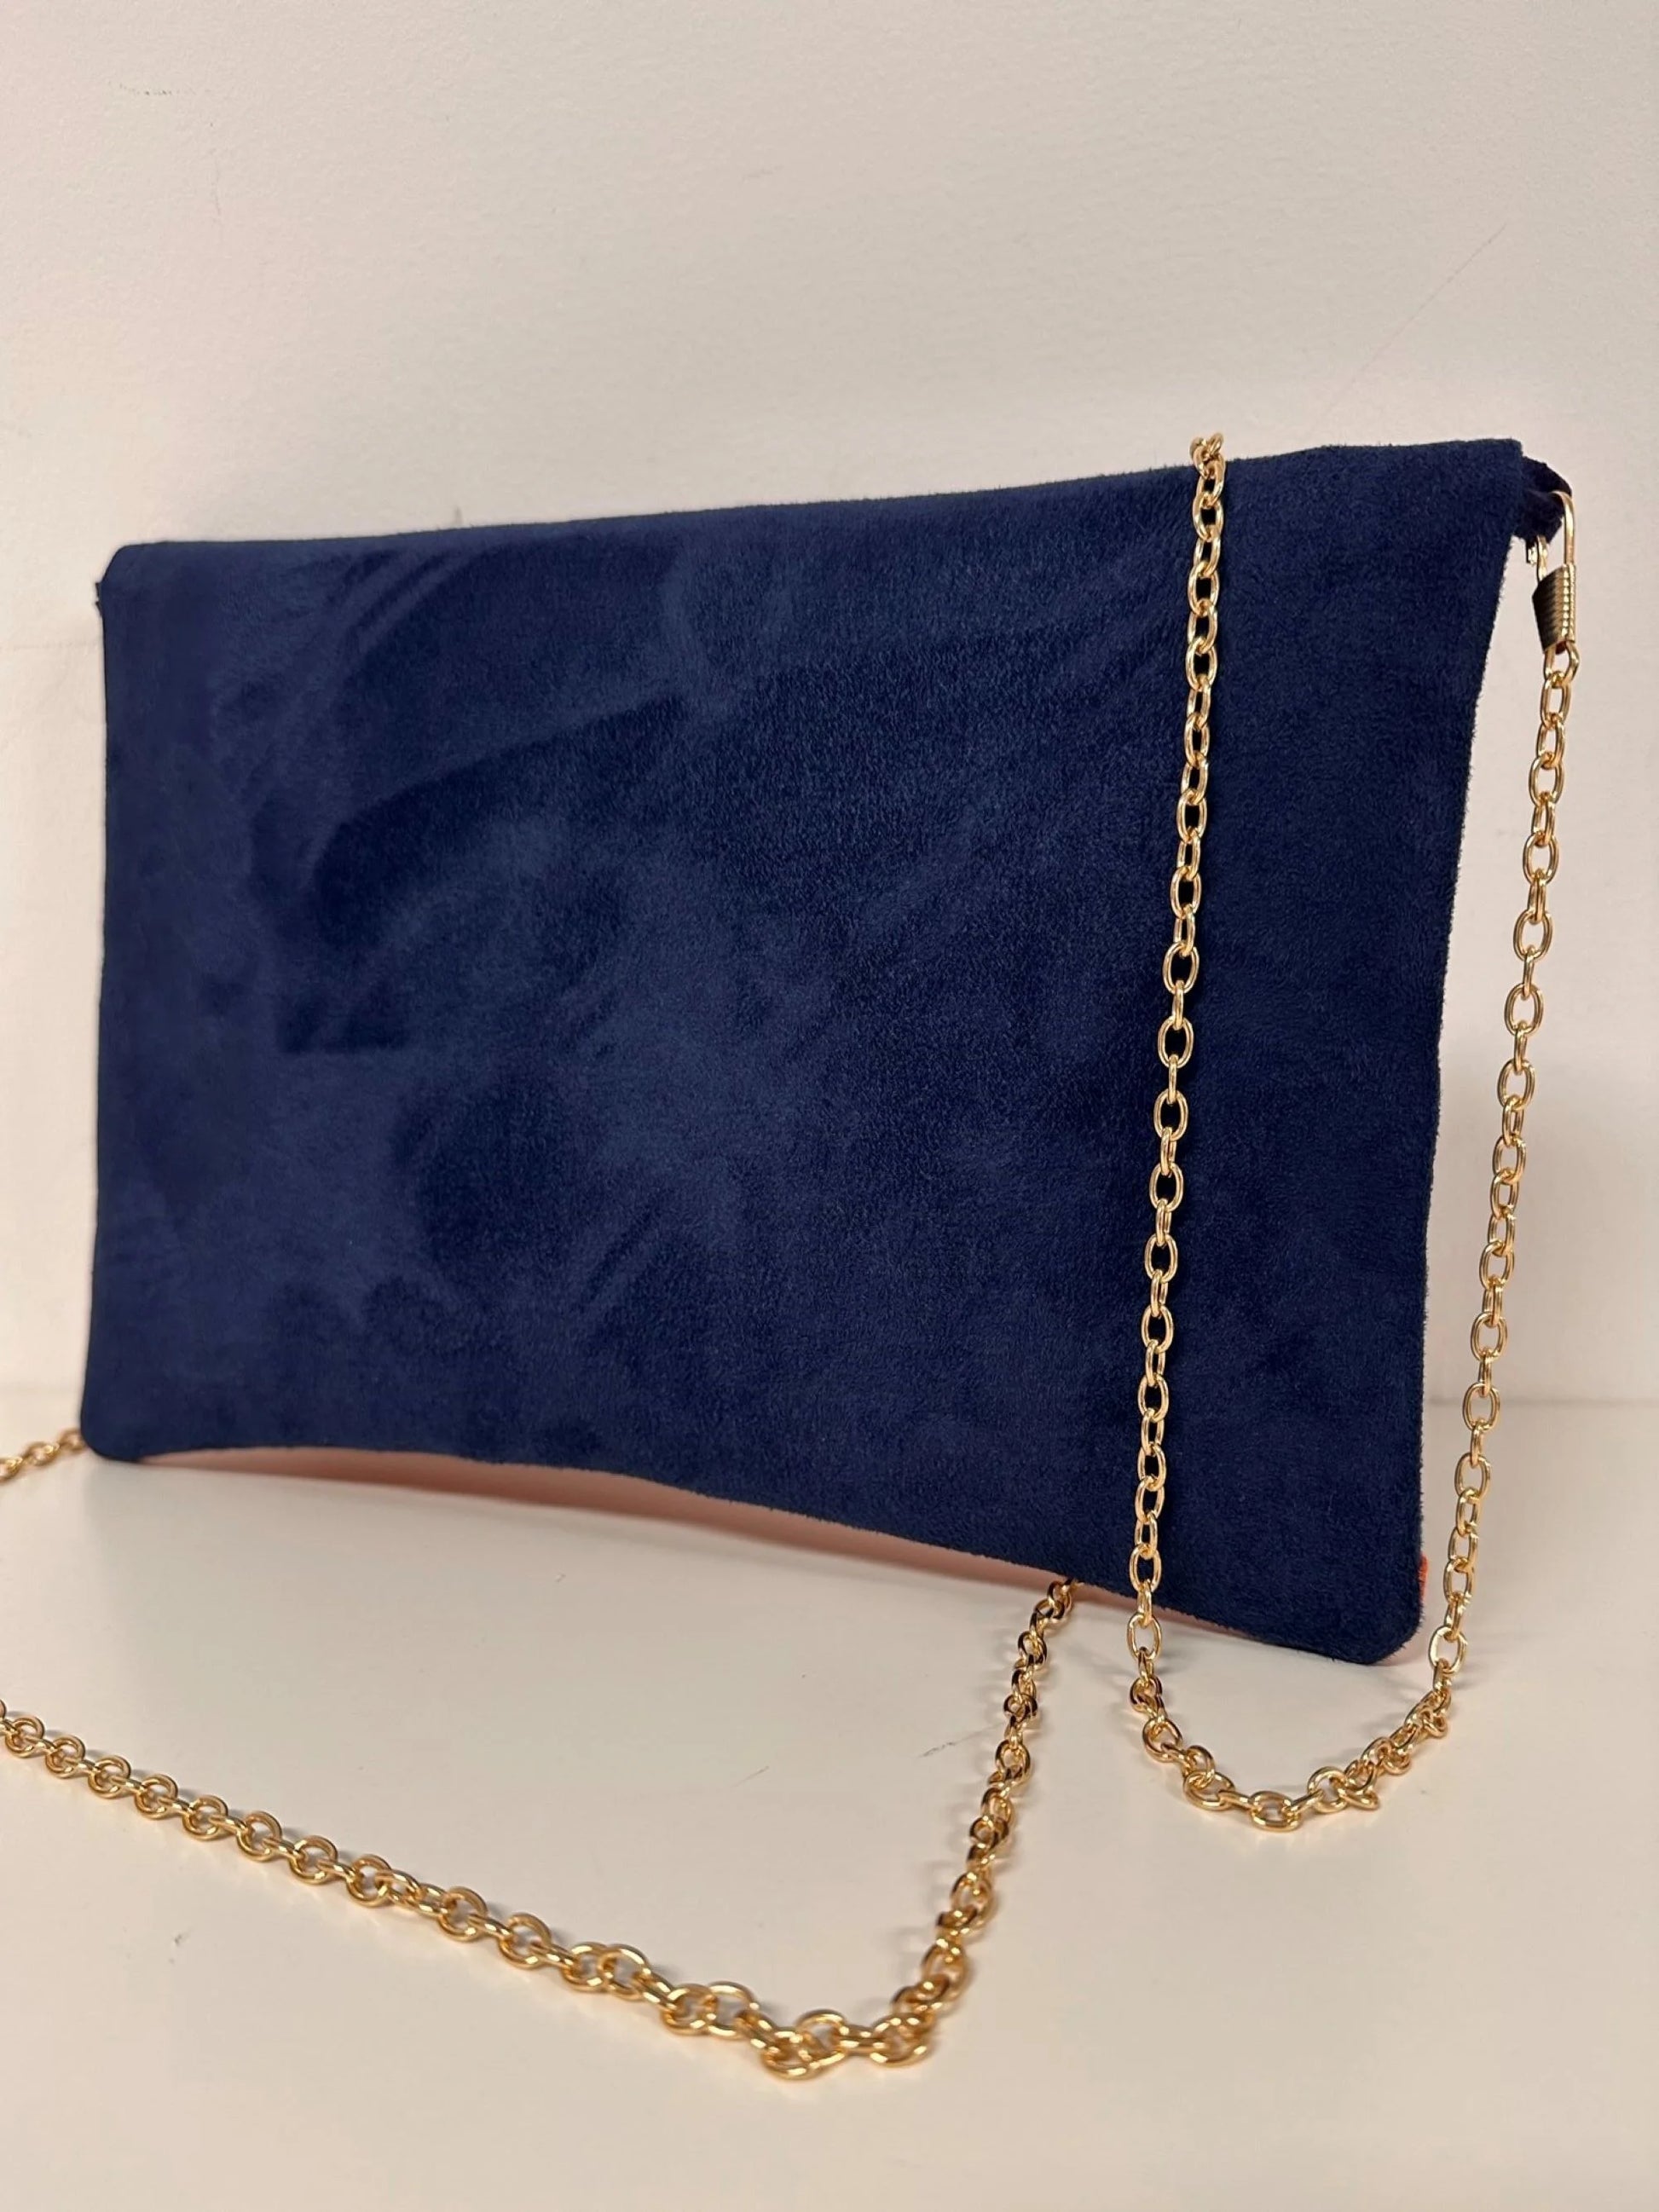 Le sac pochette Isa bleu marine et orange à paillettes, avec chainette dorée, vue de dos.